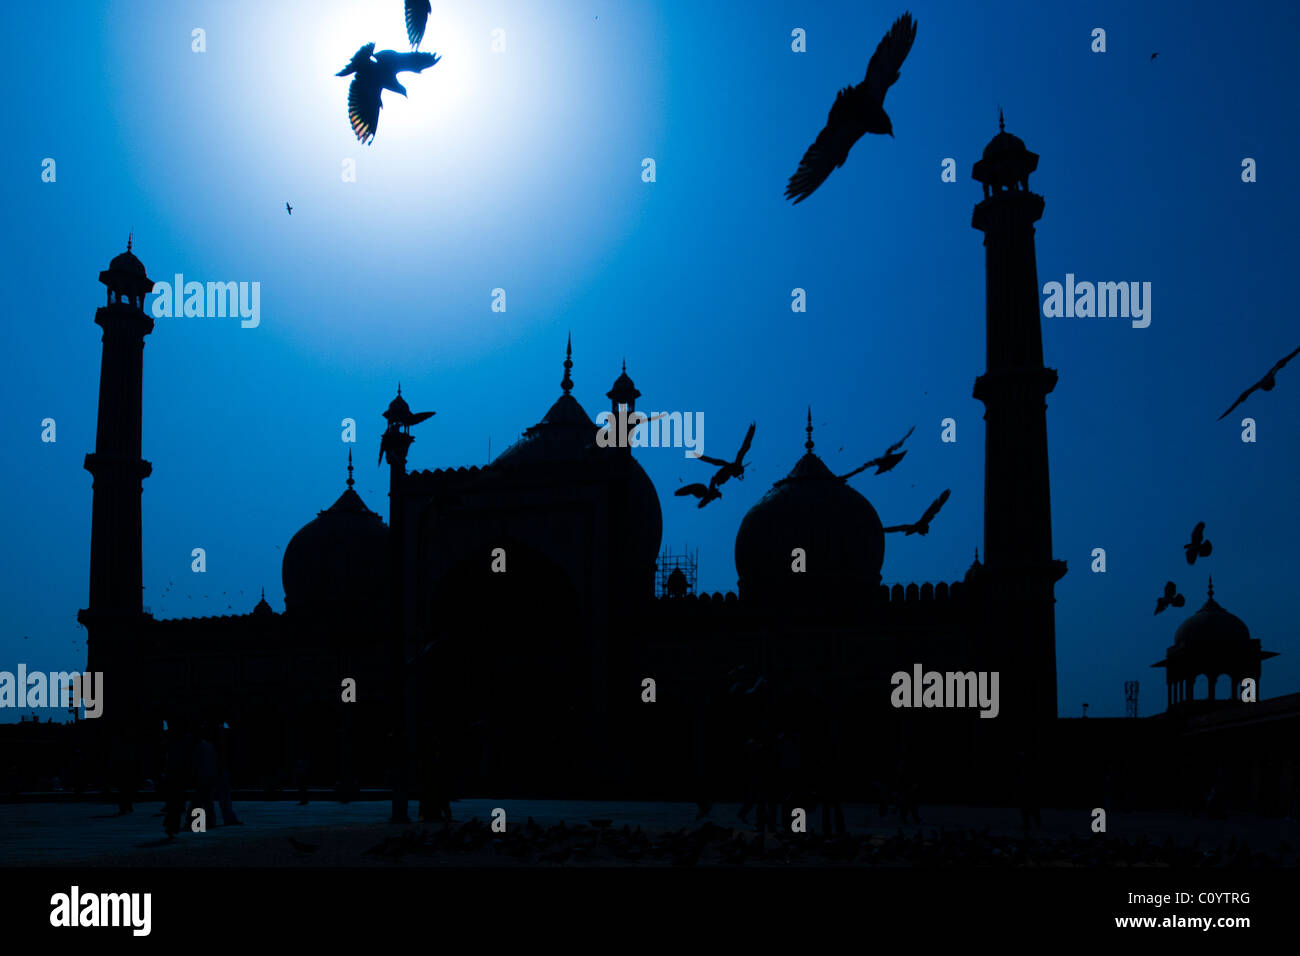 La silhouette de la mosquée Jama Masjid avec pigeons volant autour d'elle Banque D'Images